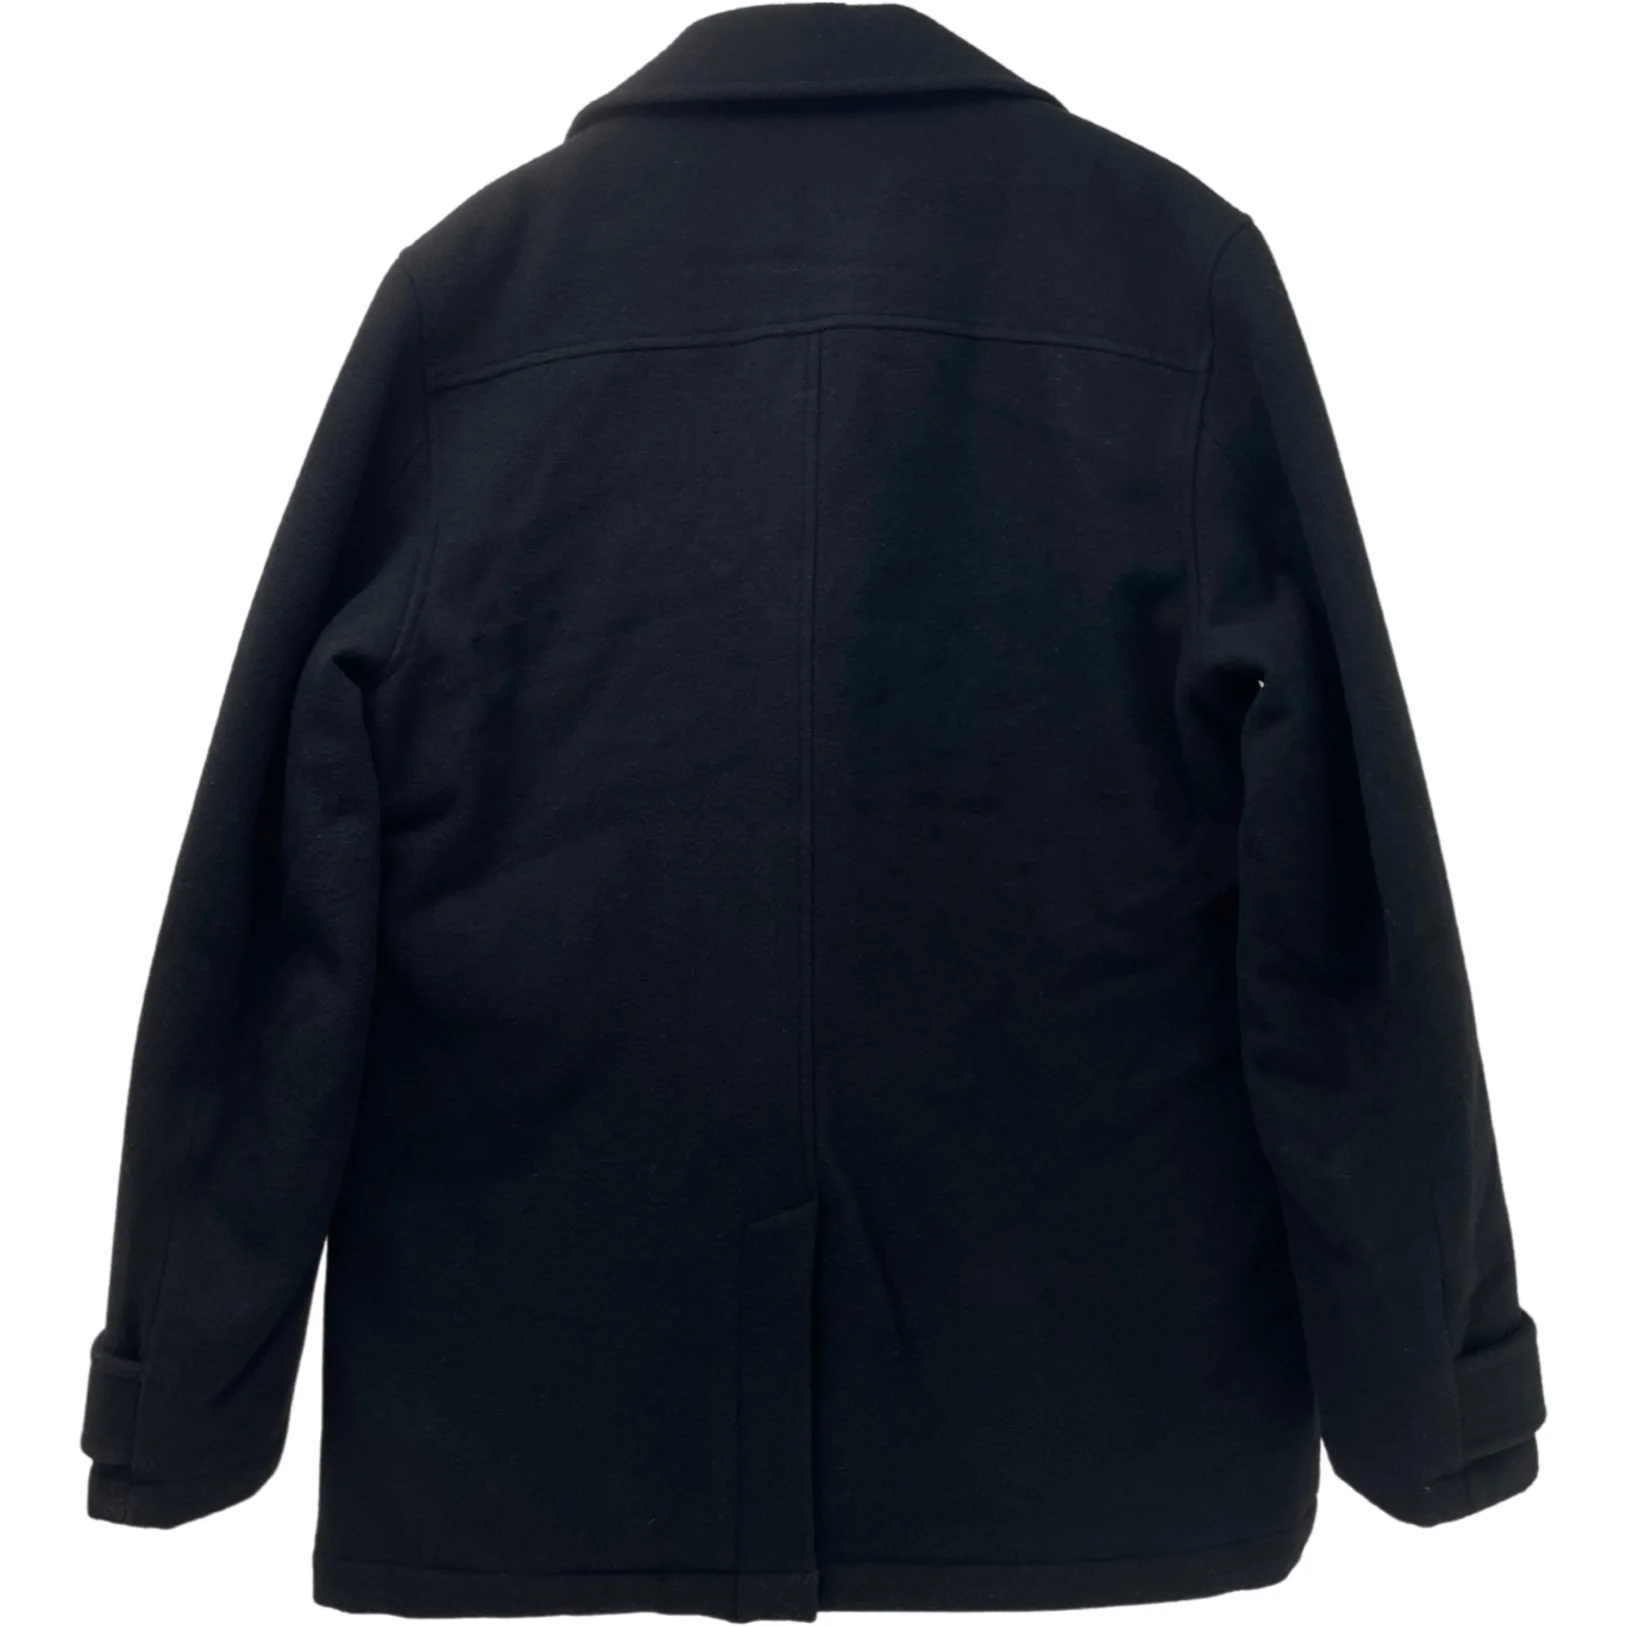 Ben Sherman Men's Winter Jacket / Formal Winter Jacket / Black / Various Sizes